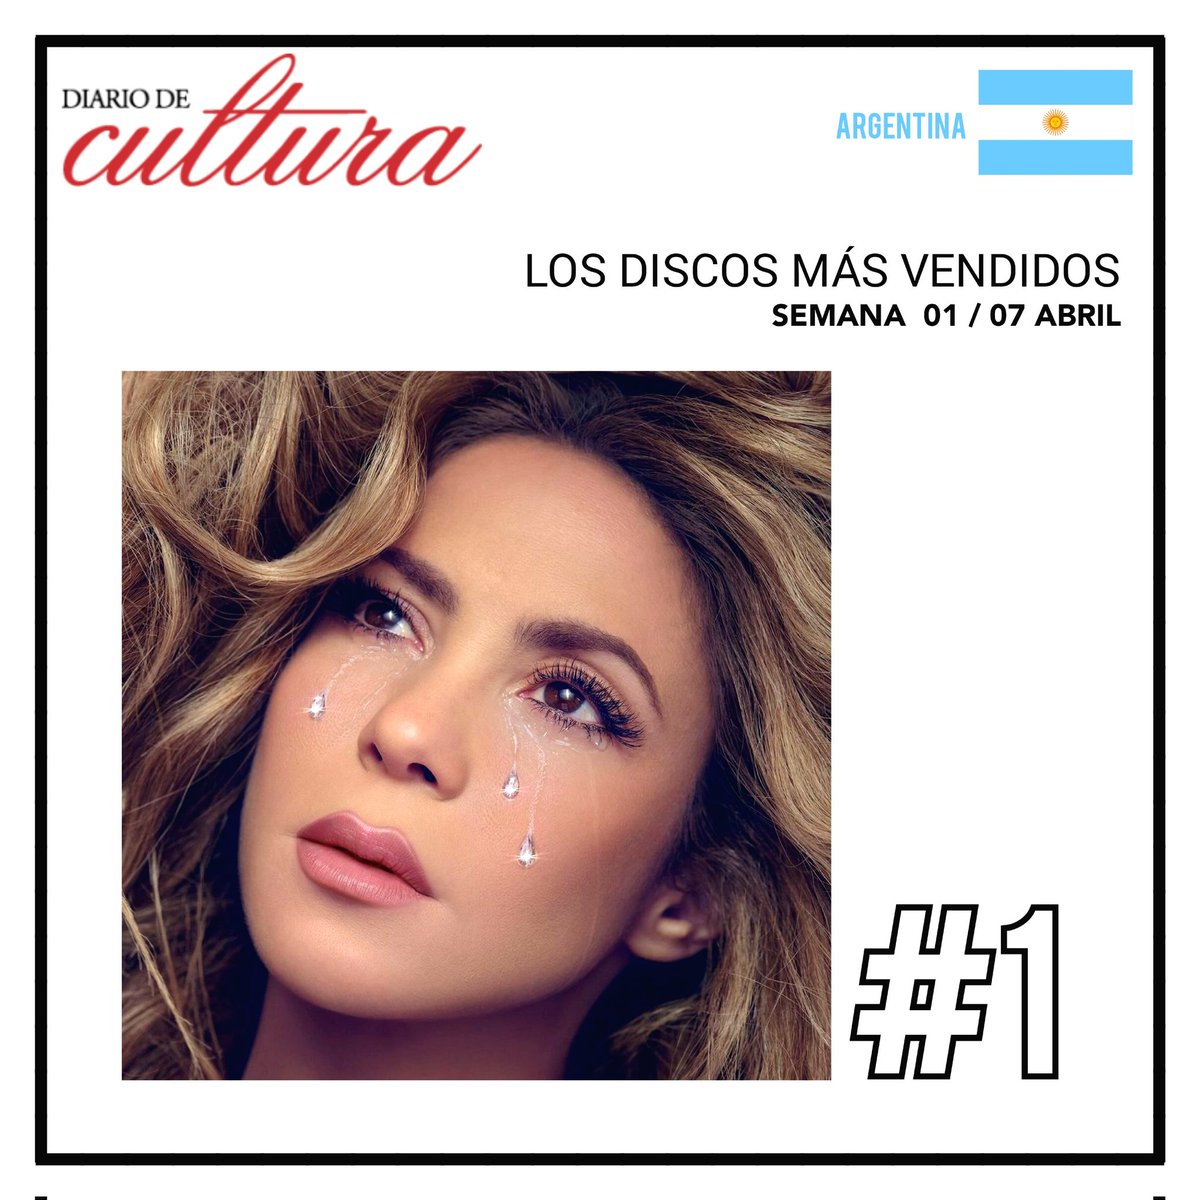 🇦🇷 | Las Mujeres Ya No Lloran de @shakira debuta en el puesto #1 en la lista semanal de ventas en Argentina.

Source: @diariodecultura

@SonyMusicArg @SonyMusicLatin
#LasMujeresYaNoLloran #ShakiraCharts